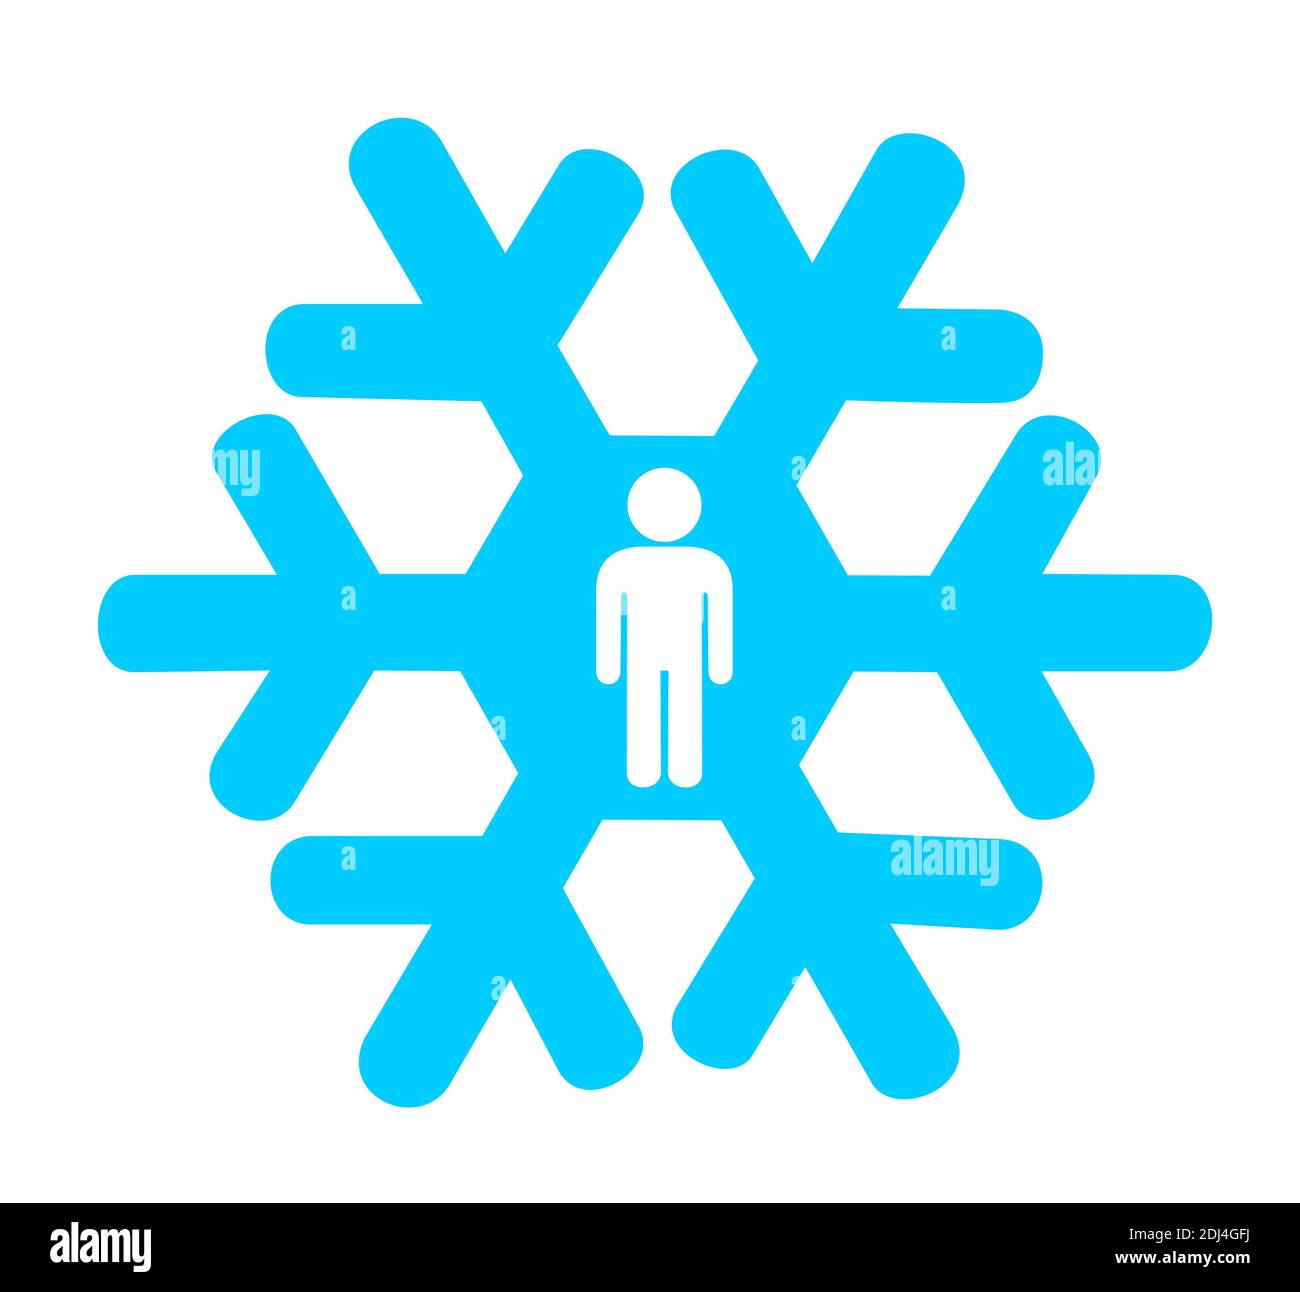 Metapher Bedeutung - Schneeflocke mit Silhouette des Menschen als Symbol der Schneeflocke Generation - schwache, zerbrechliche, verletzliche Menschen. vektor-Illustration Stockfoto